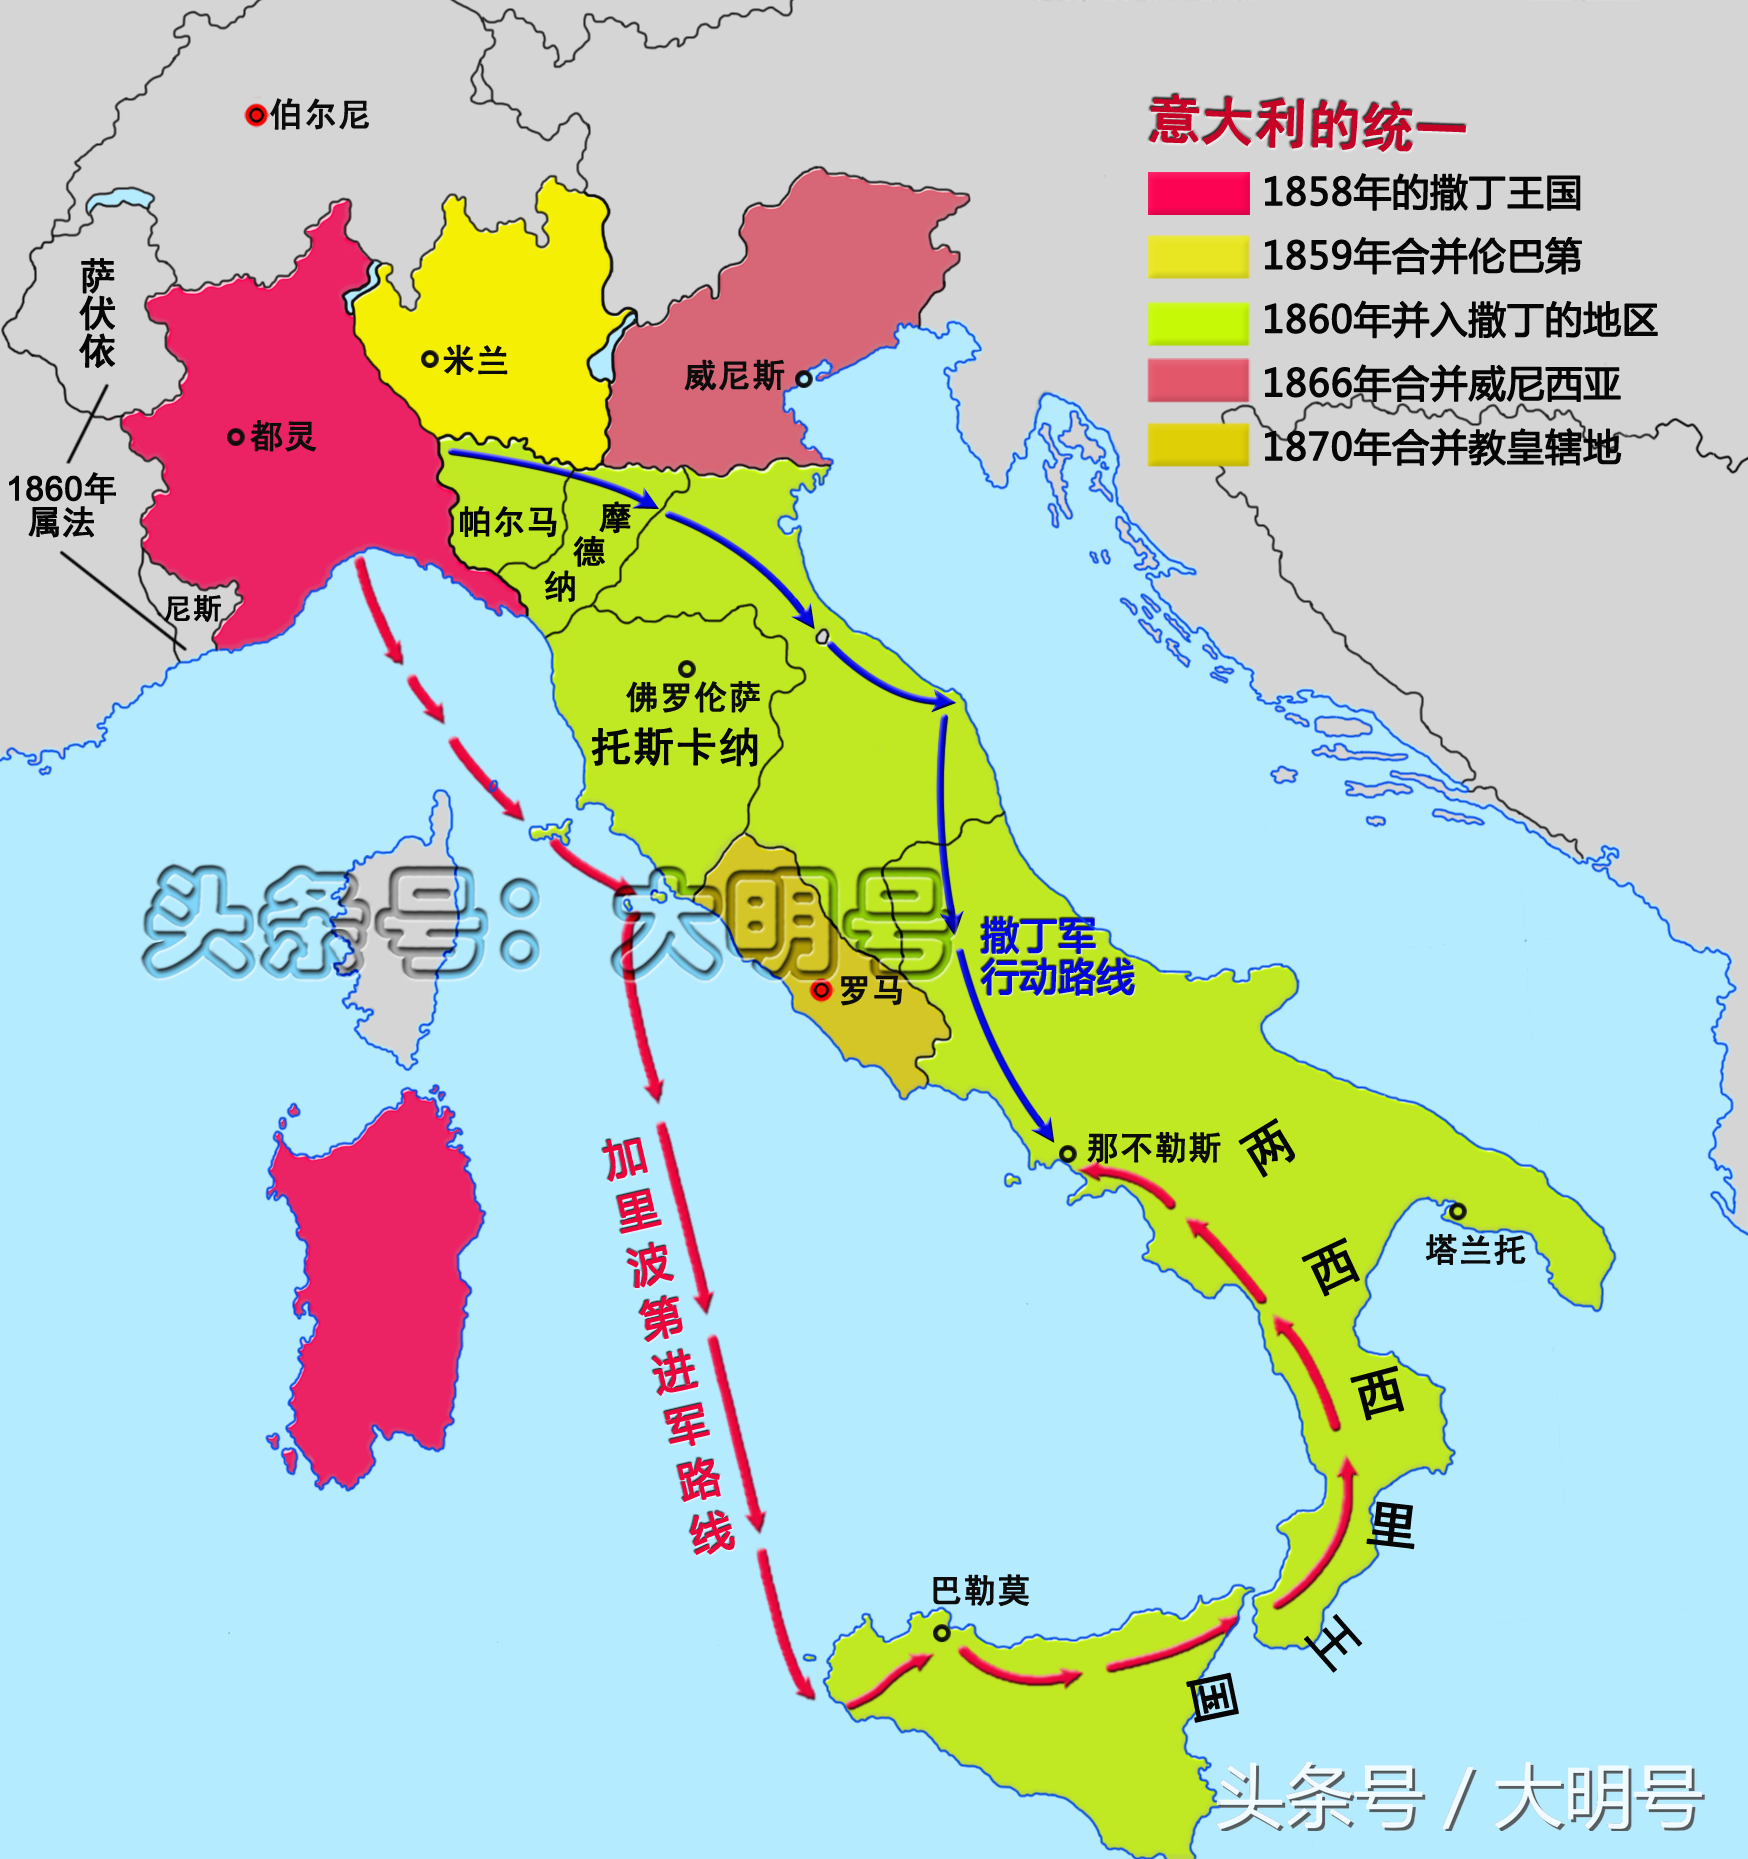 撒丁王国通过自上而下的王朝战争的方式驱逐了外国势力,缔造了意大利